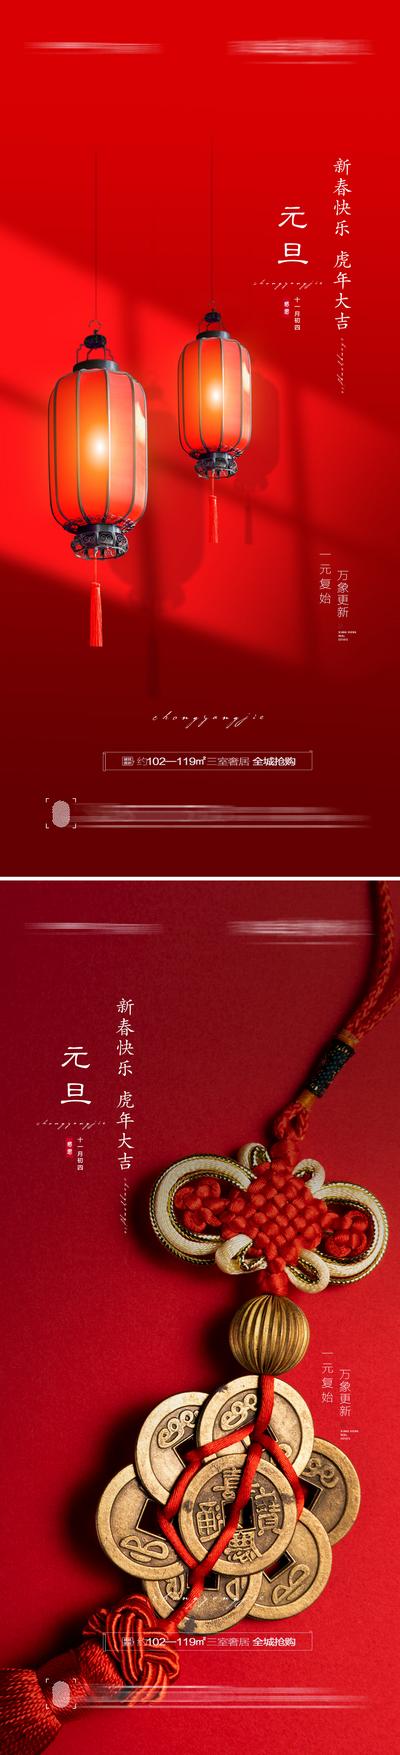 南门网 海报  地产 公历节日 元旦  红色 灯笼 系列